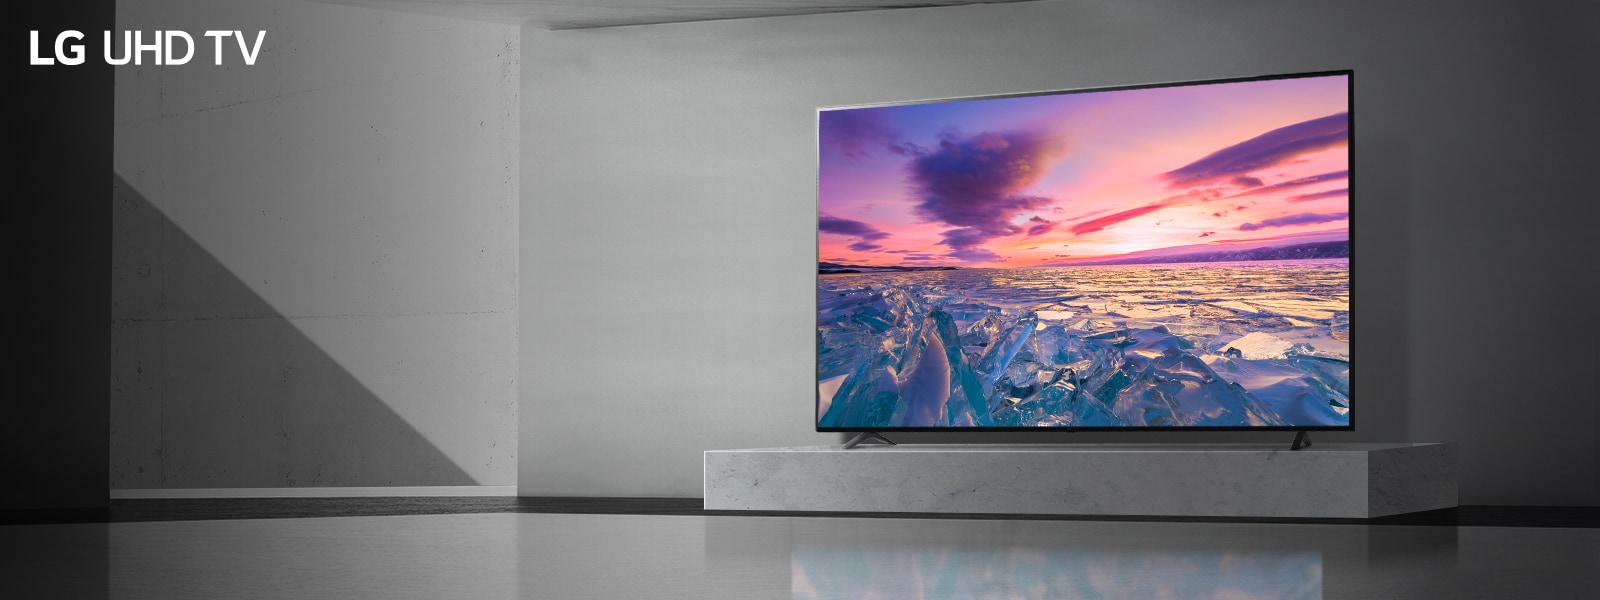 Ein Fernseher in einem kahlen Raum zeigt einen Sonnenuntergang in leuchtenden, lebhaften Farben auf dem Bildschirm an.